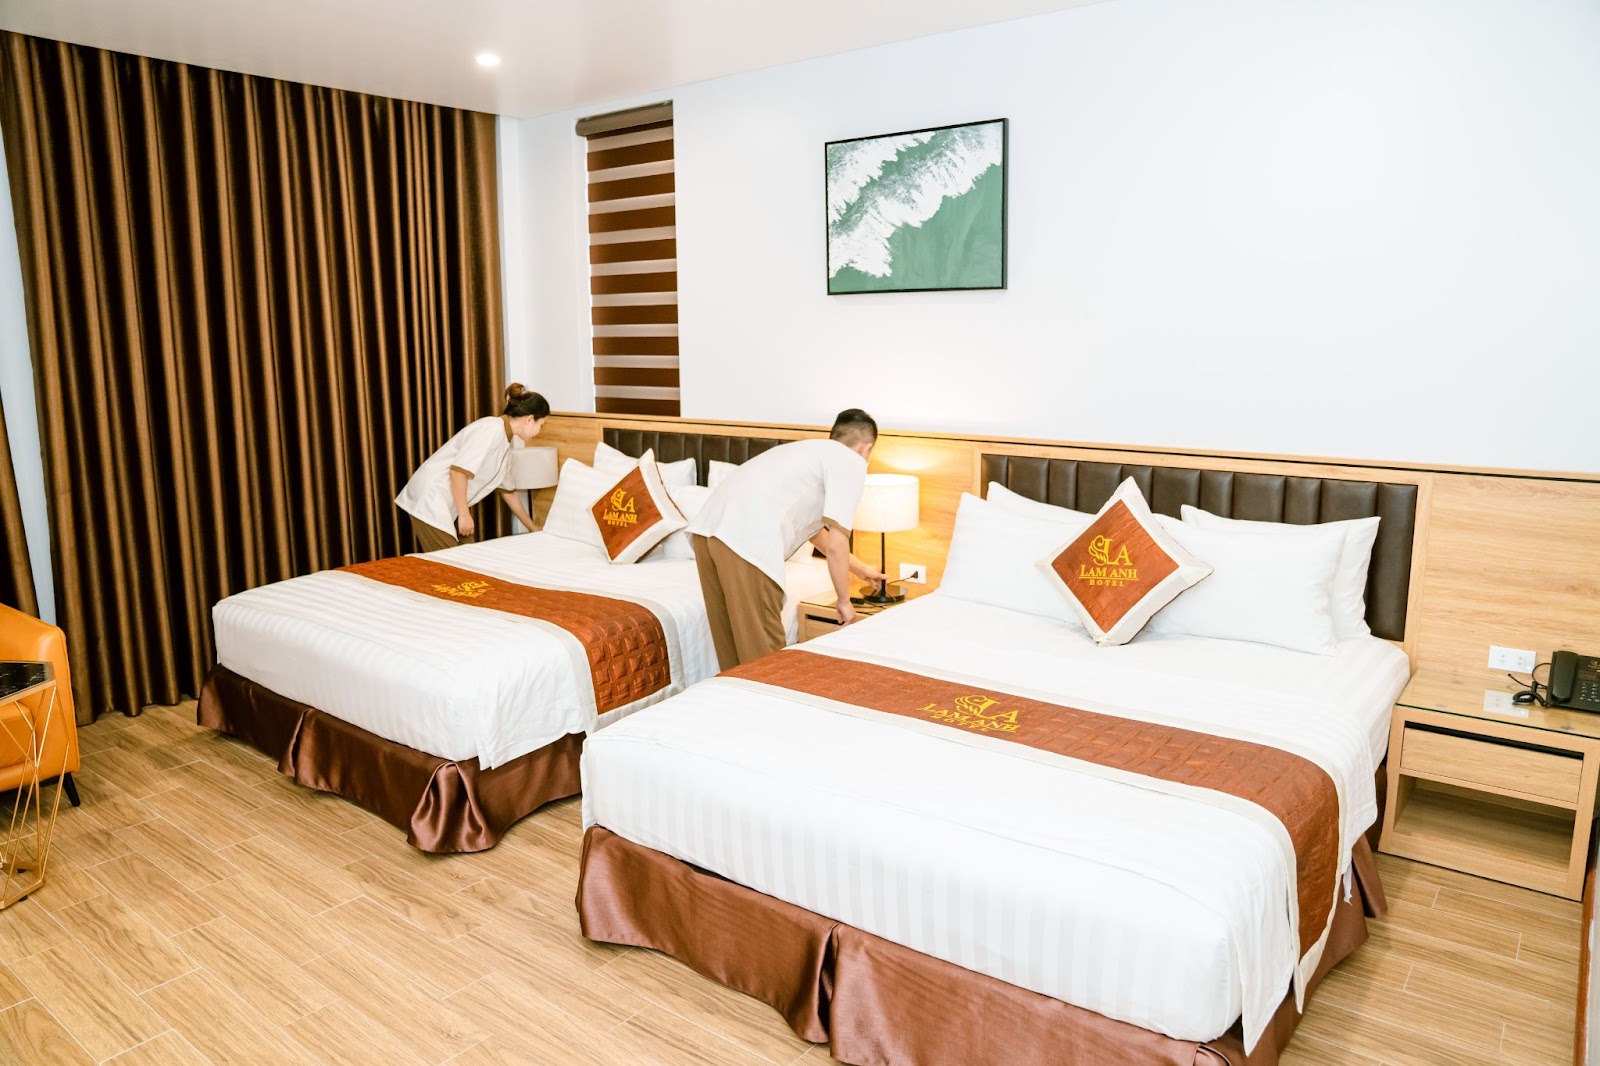 Lam Anh Hotel cung cấp đầy đủ các tiện ích, dịch vụ cho khách lưu trú